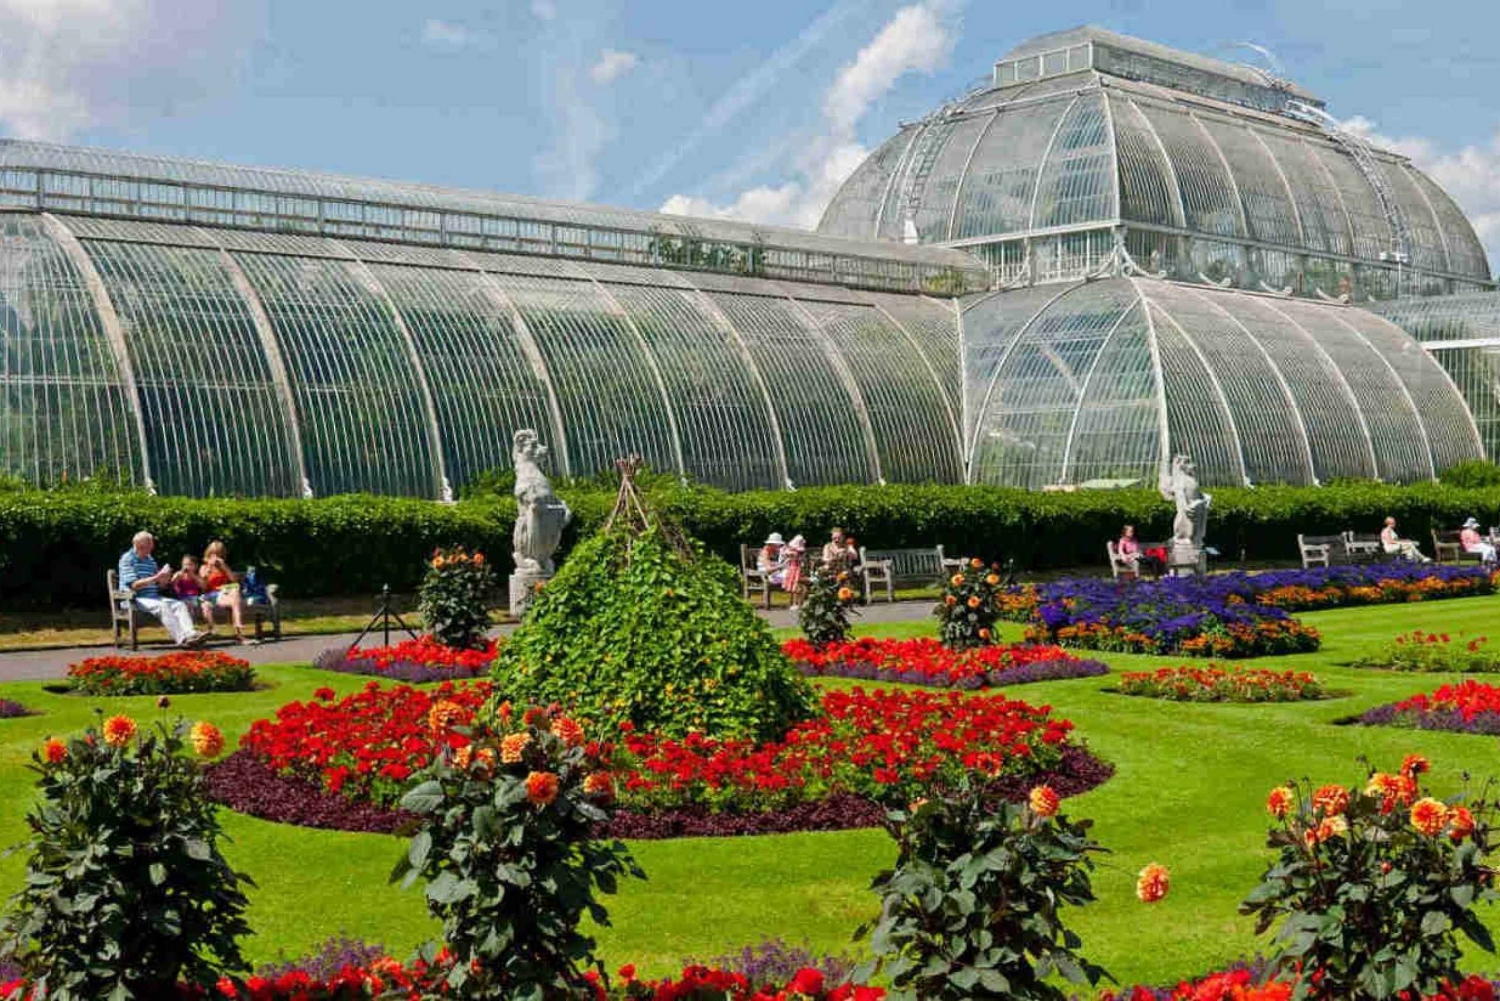 Londres: Excursão a pé por Westminster e visita aos jardins de Kew